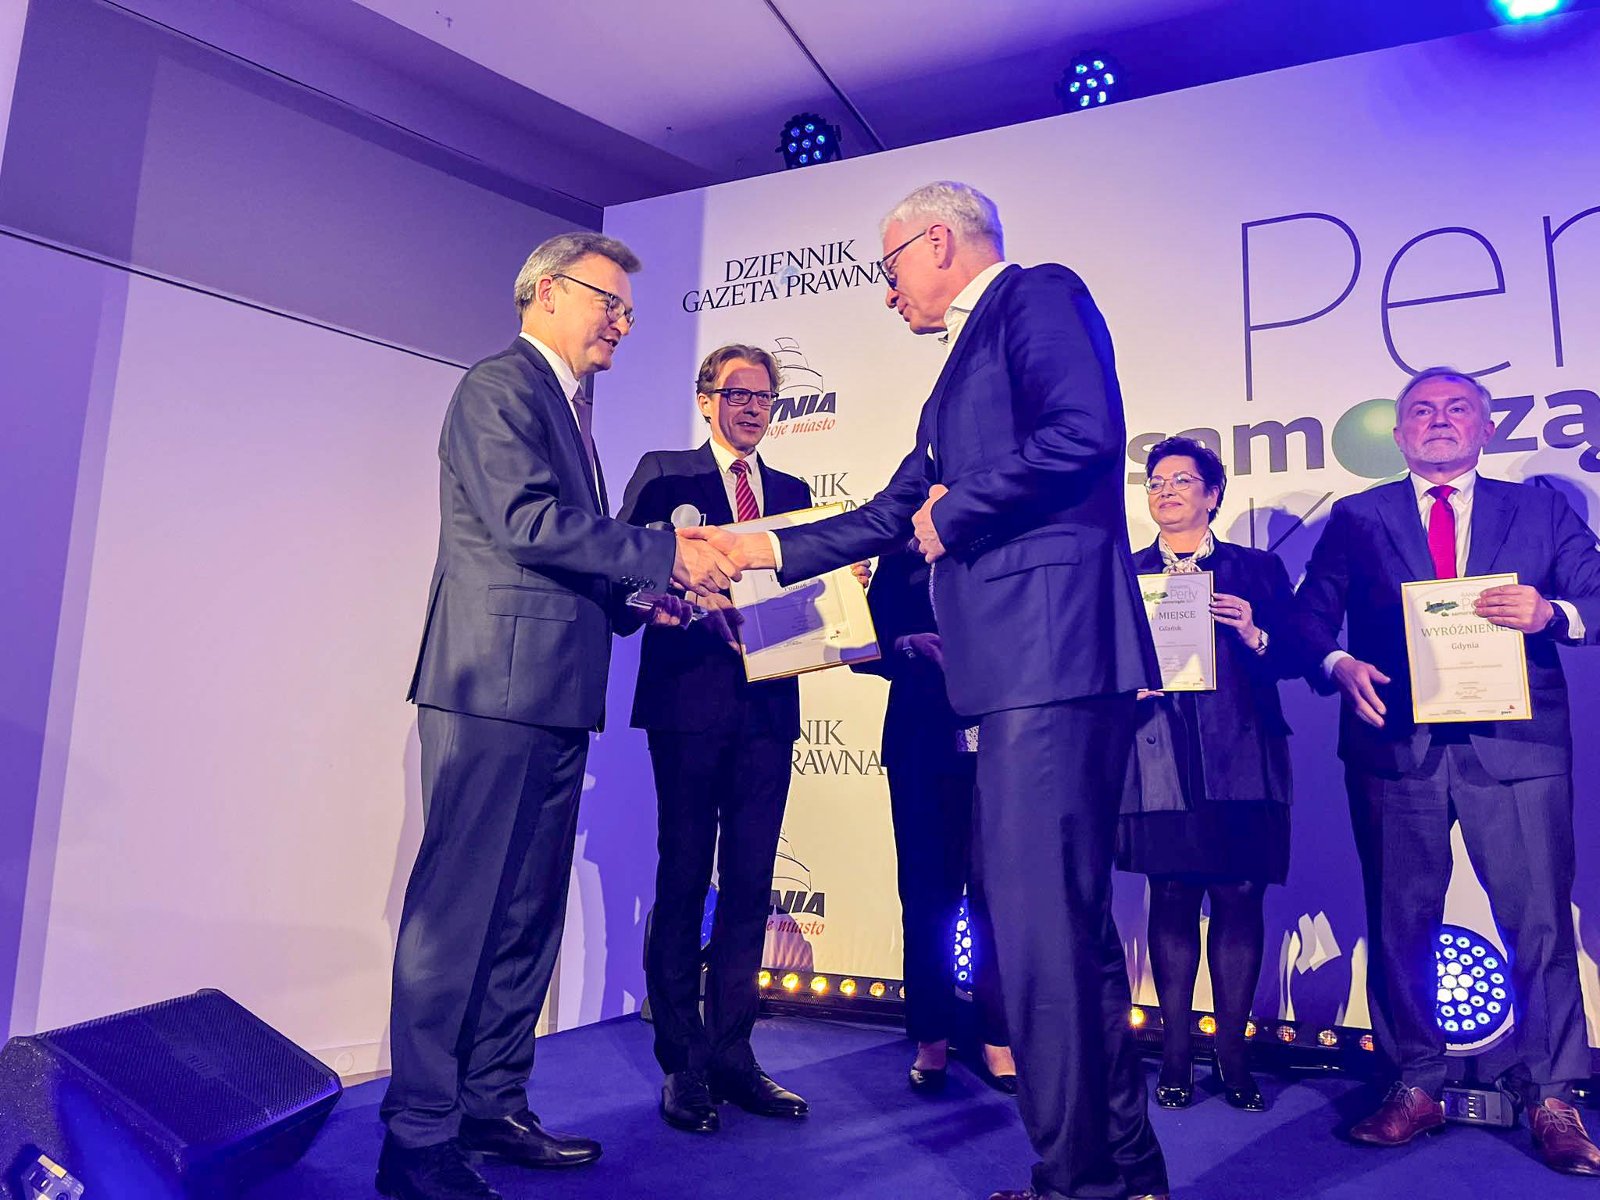 Na zdjęciu prezydent Poznania odbierający nagrodę na scenie - grafika artykułu